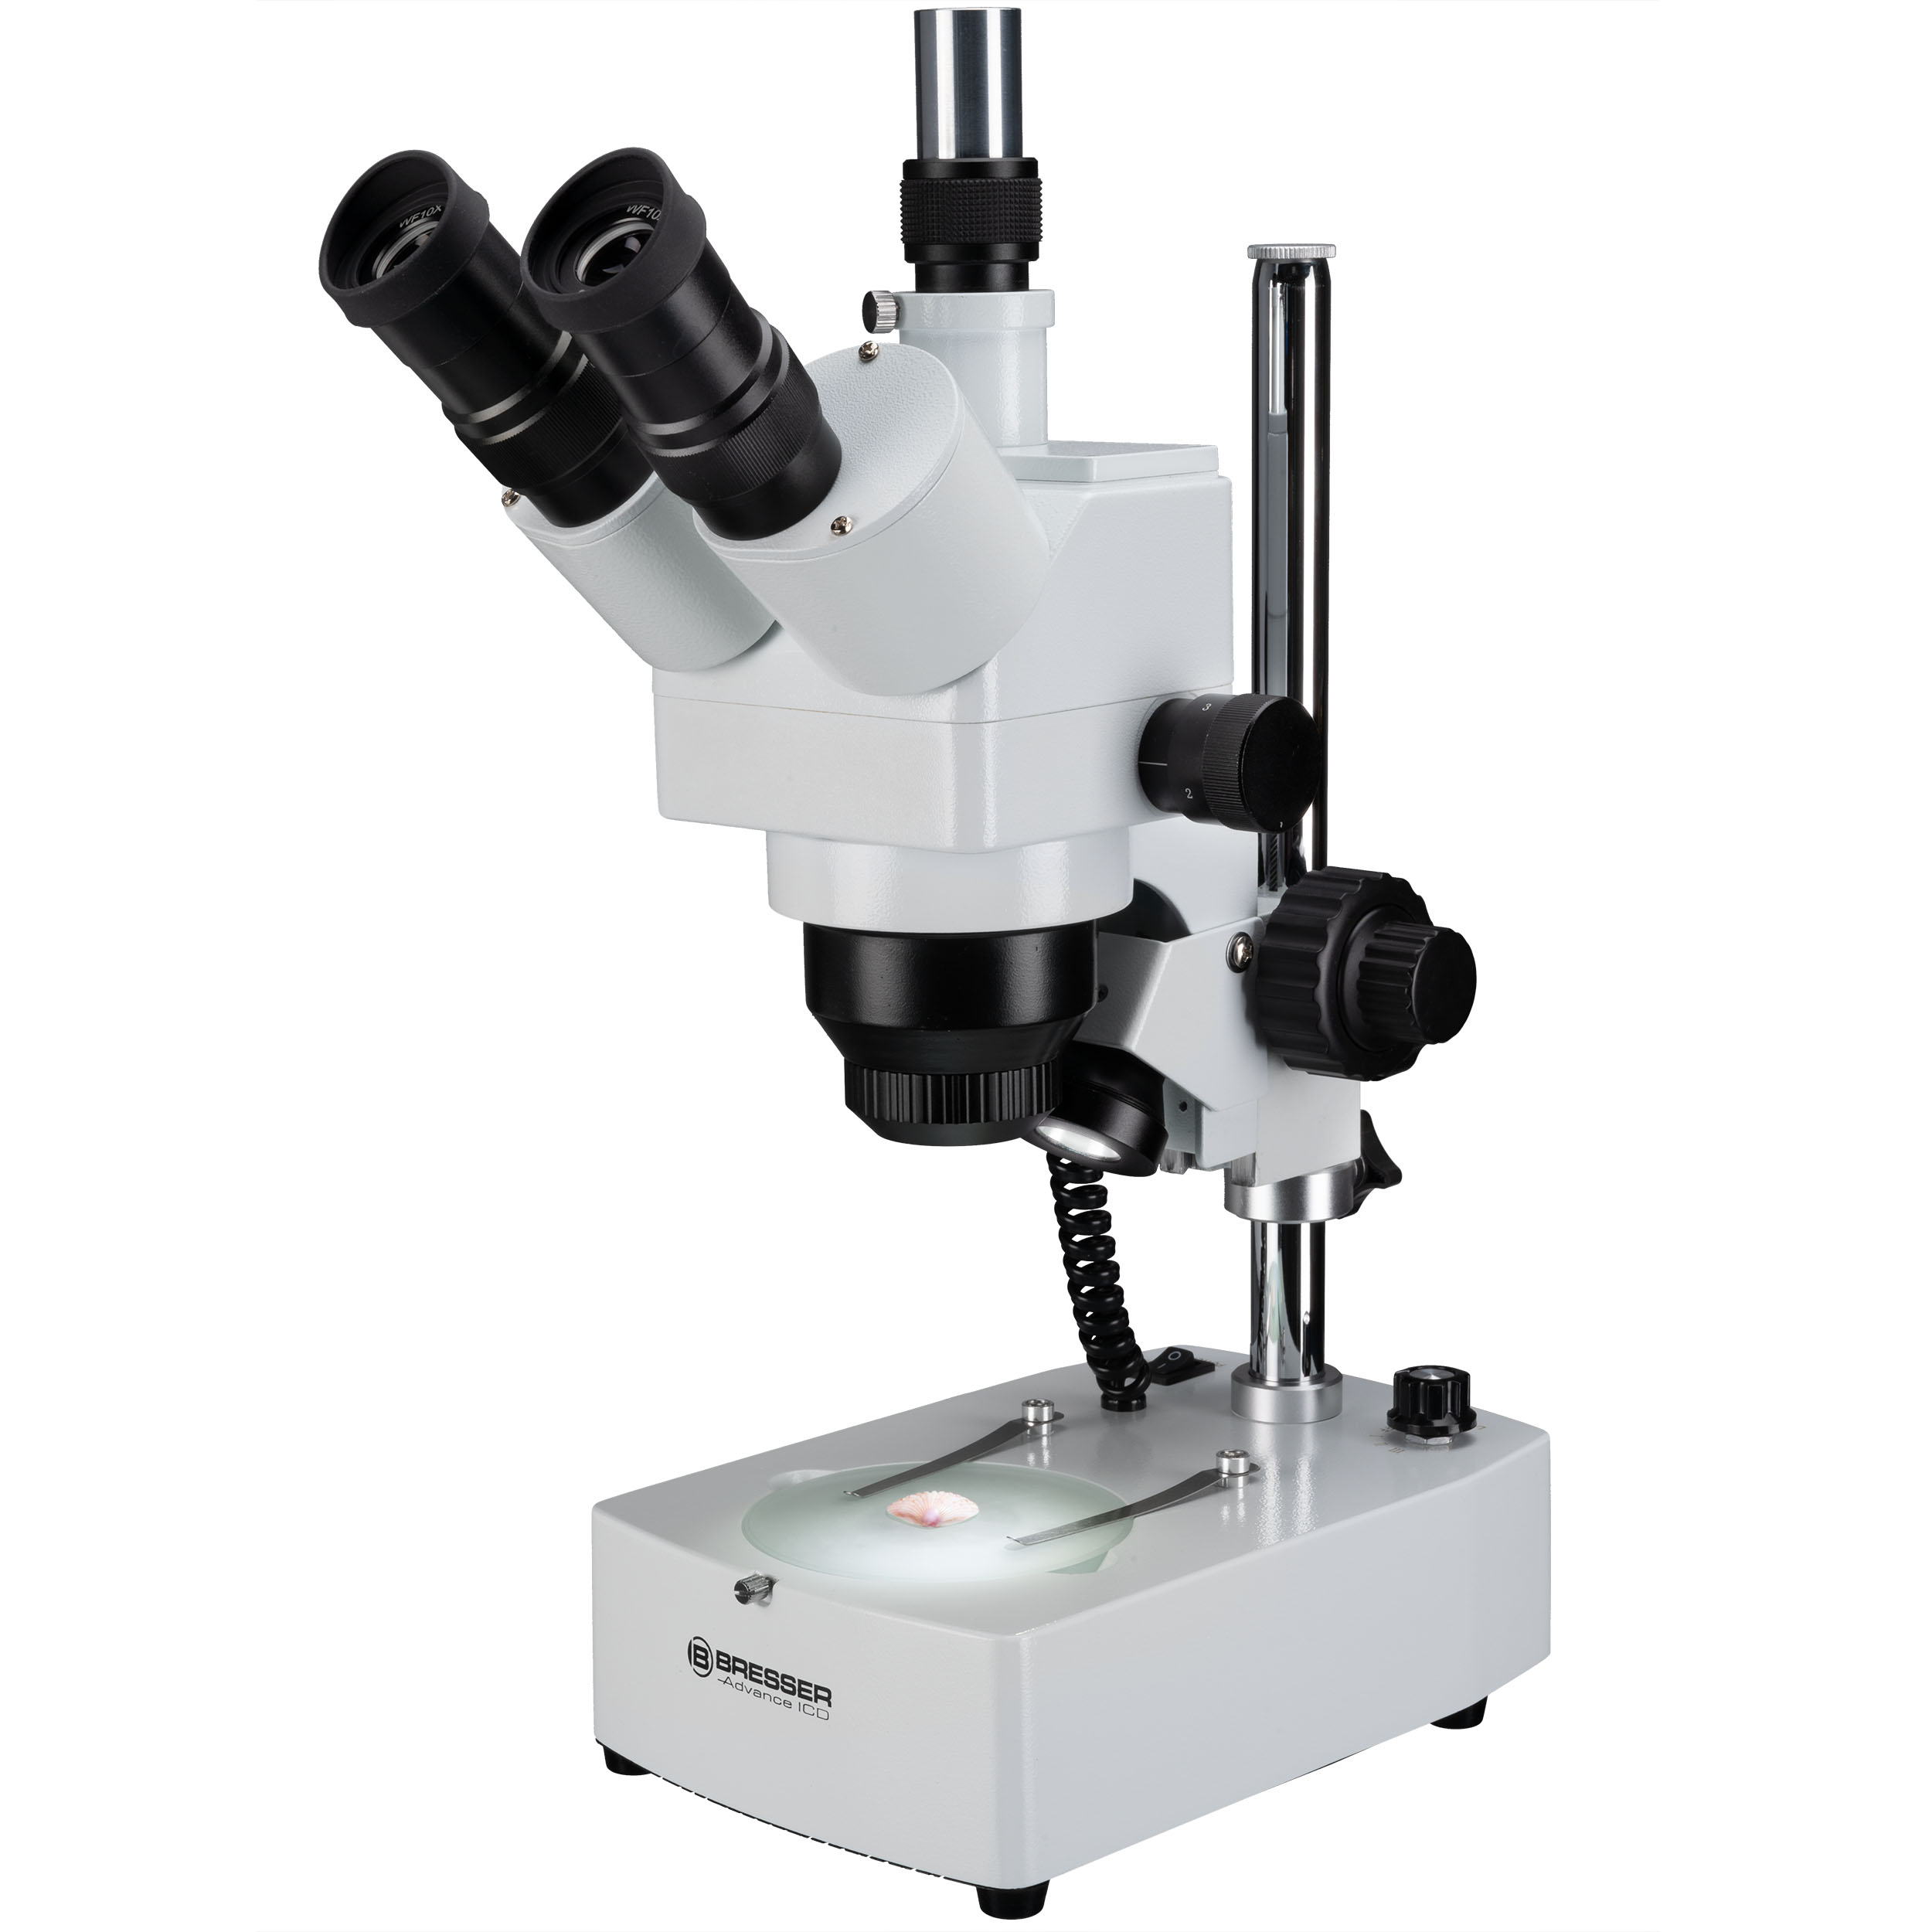 Microscopio zoom stereo di alta qualità per amatori e applicazioni professionali